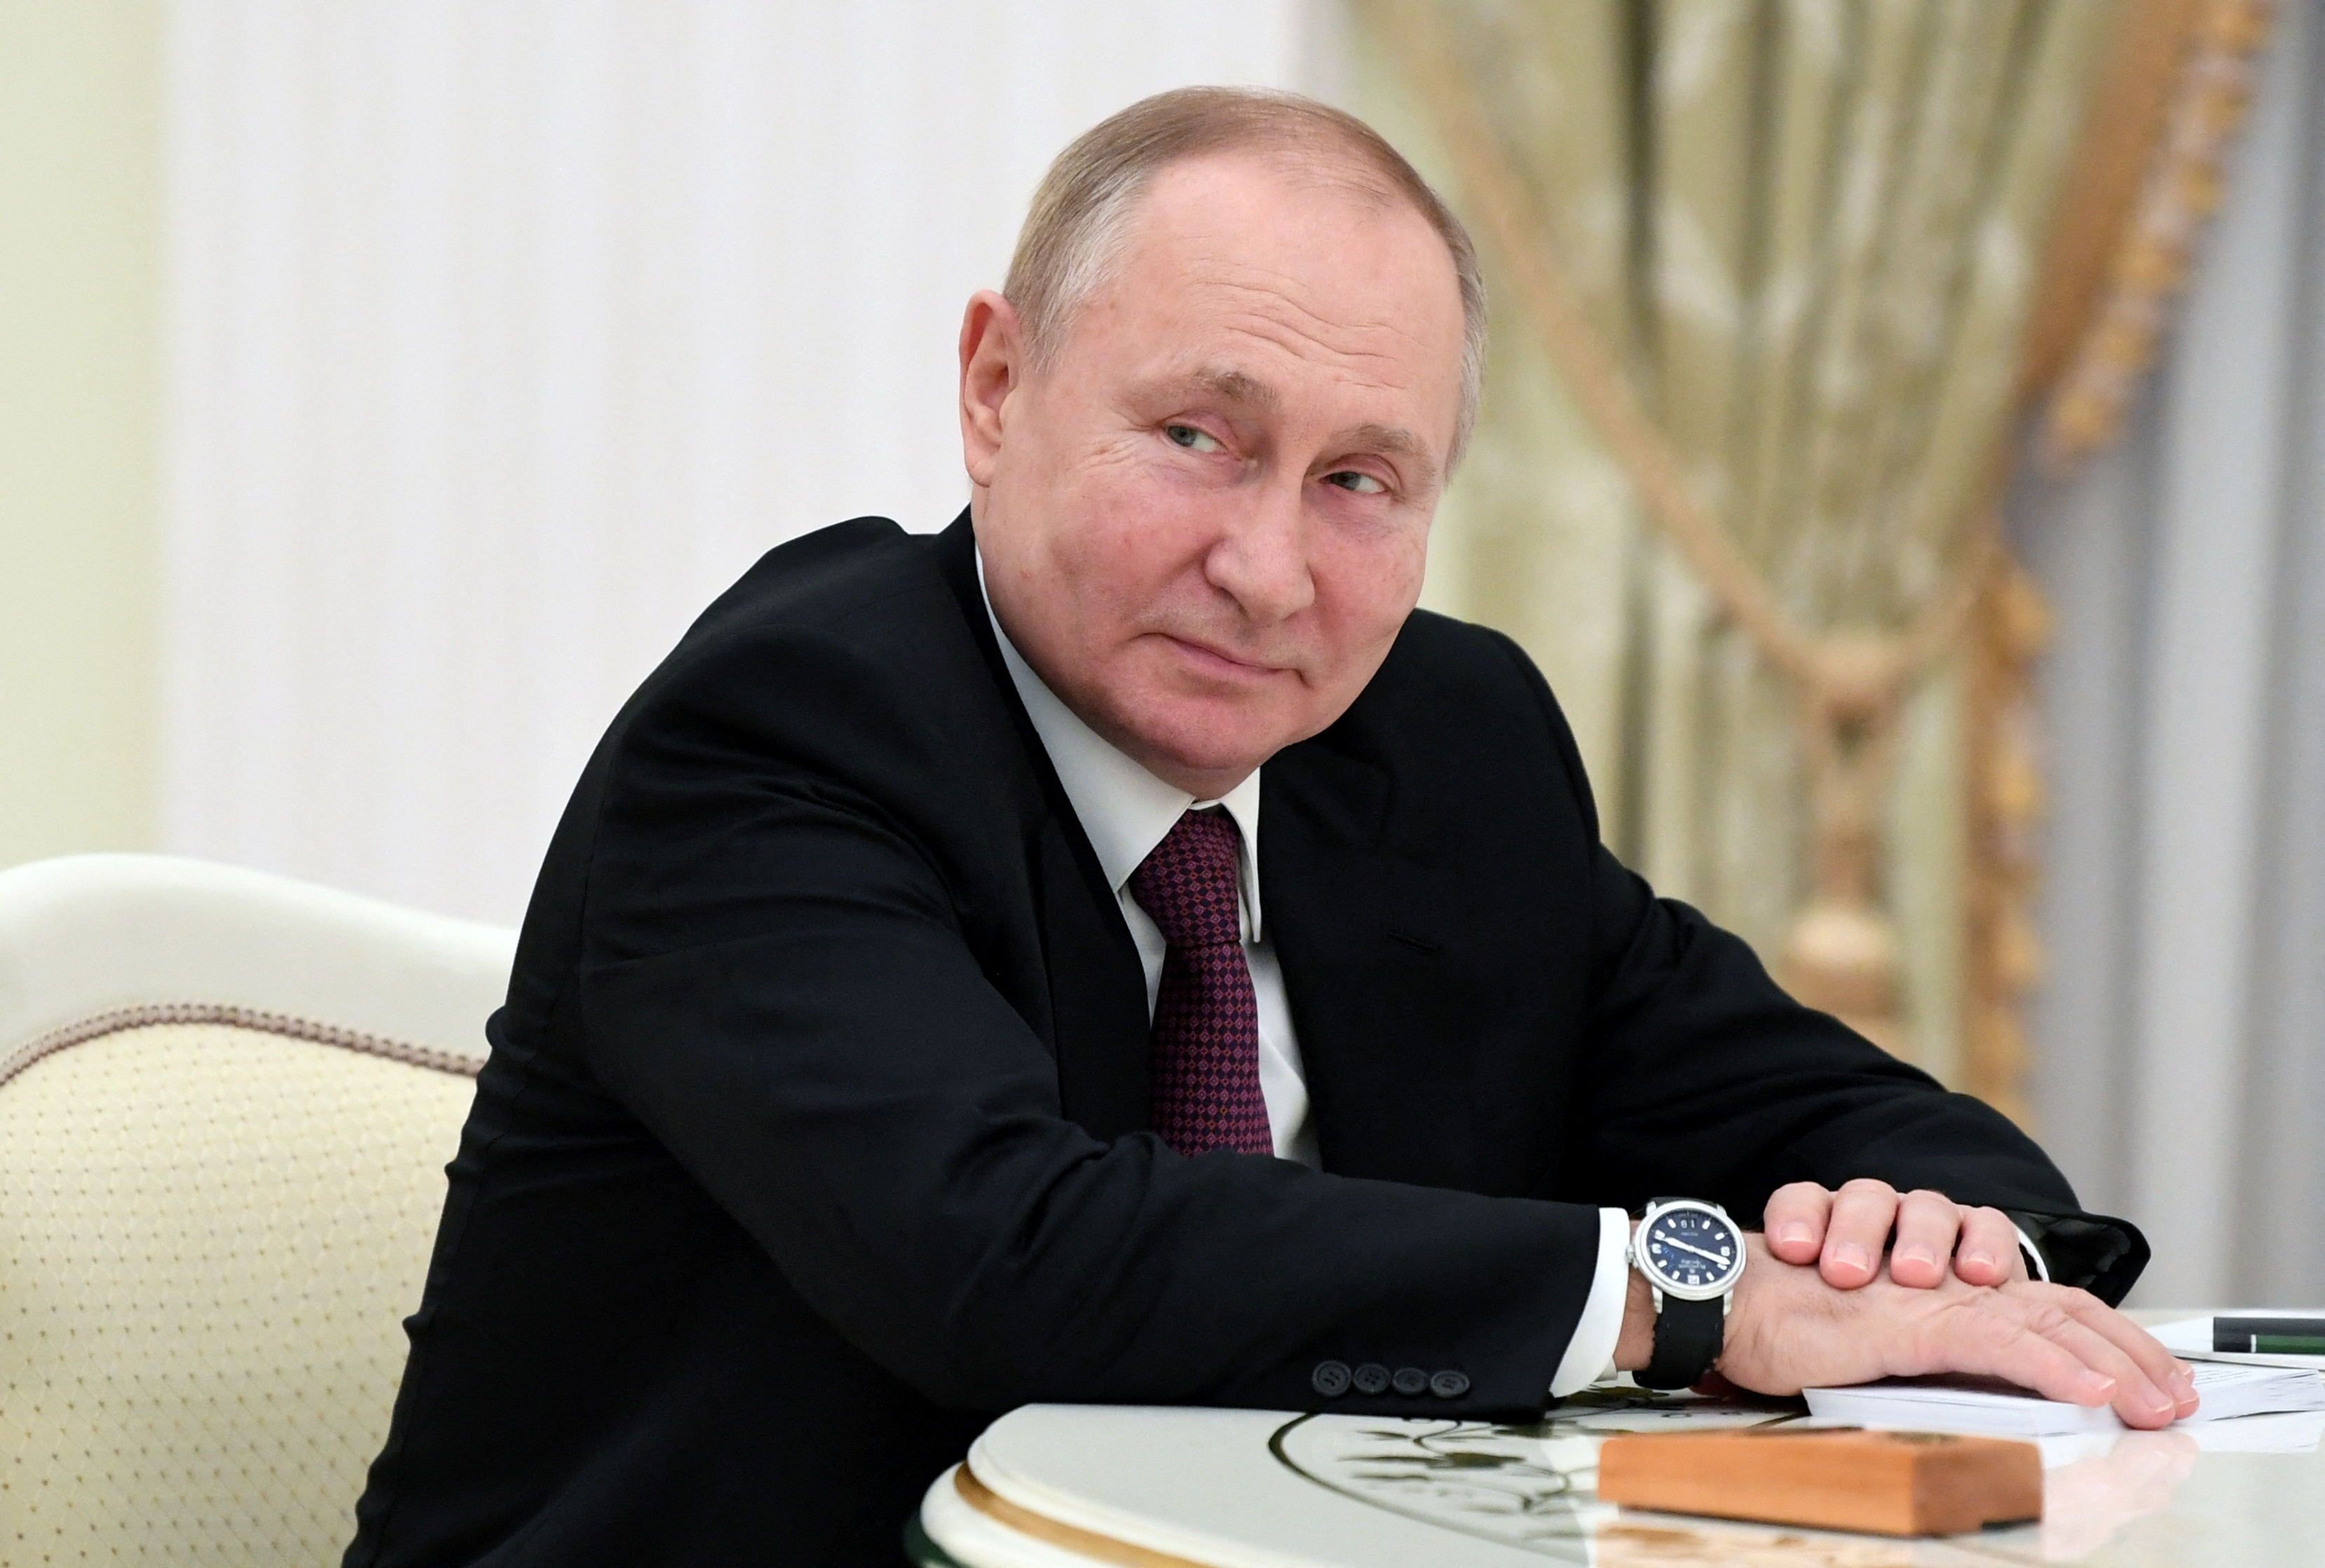 El presidente de Rusia, Vladimir Putin. Sputnik/Pavel Bednyakov/Pool via REUTERS 